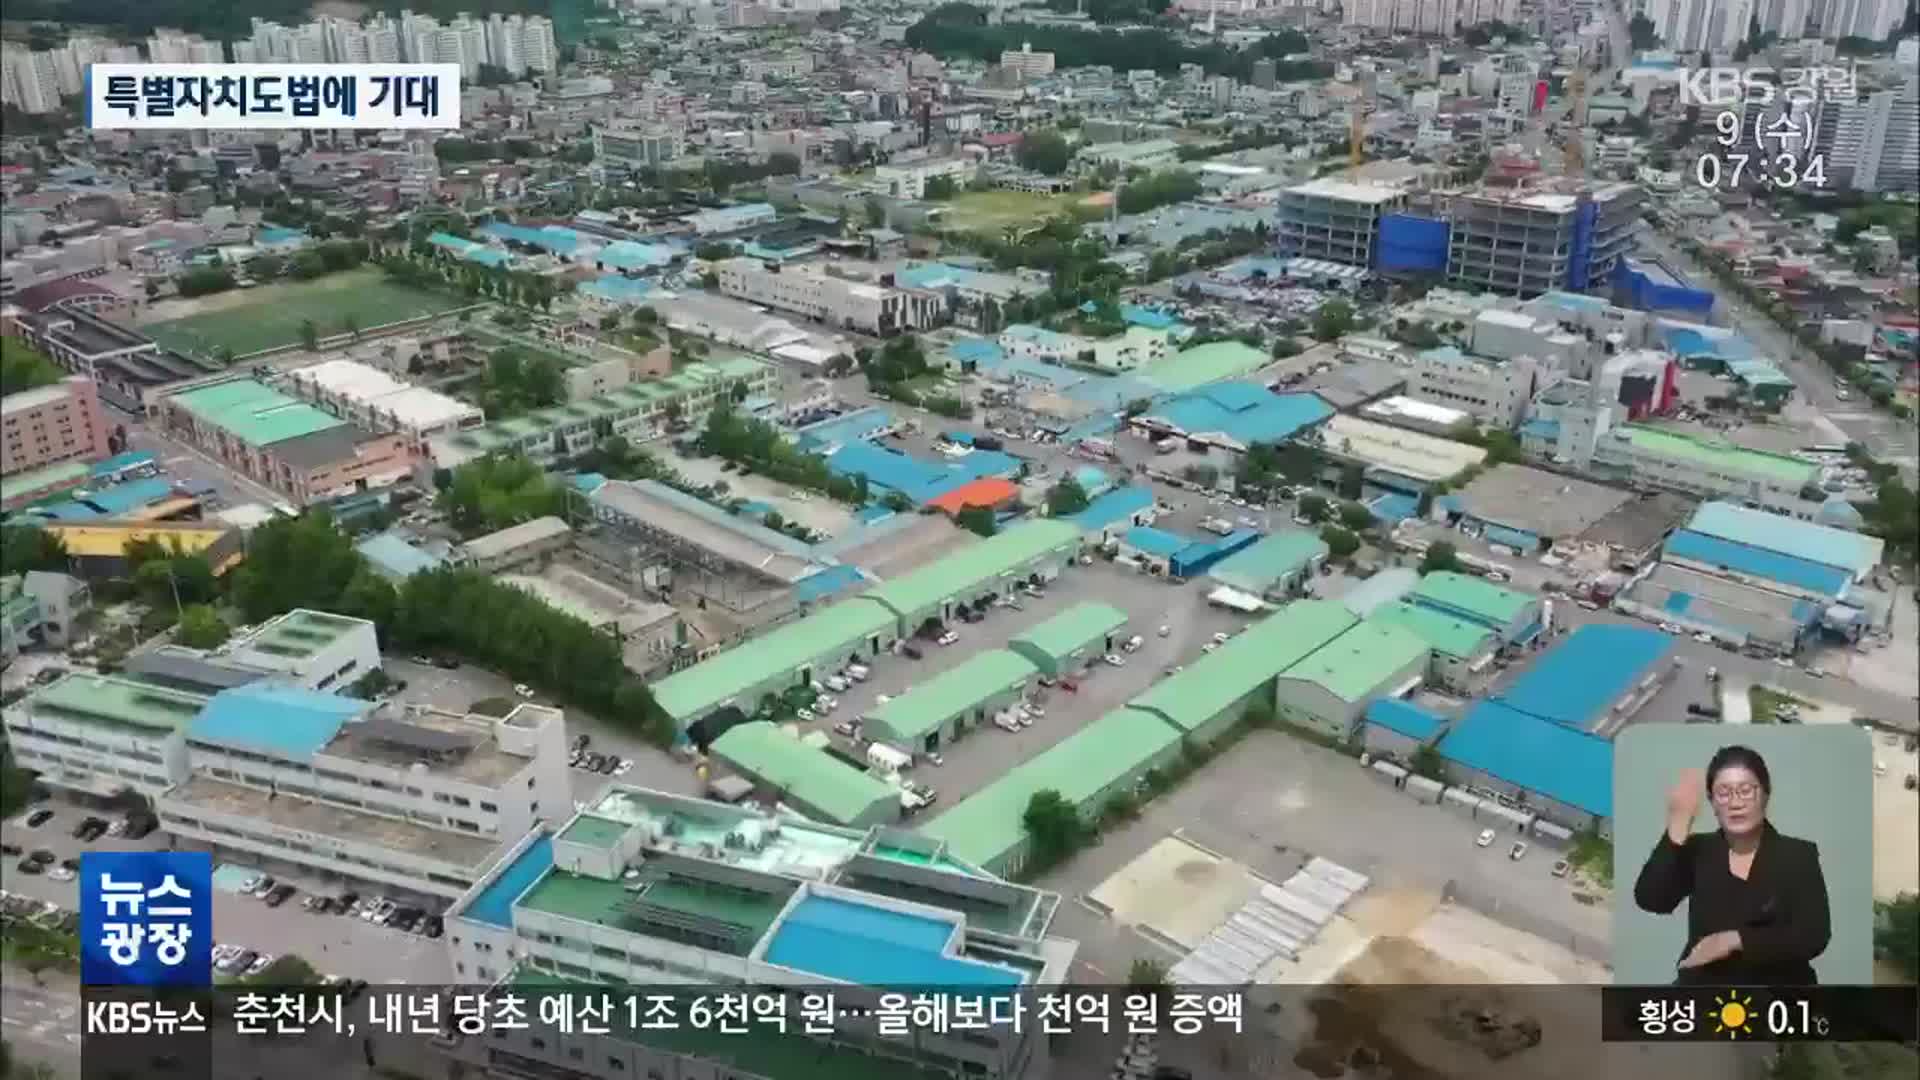 규제에 묶인 춘천 역점 사업…강원특별자치도법에 기대